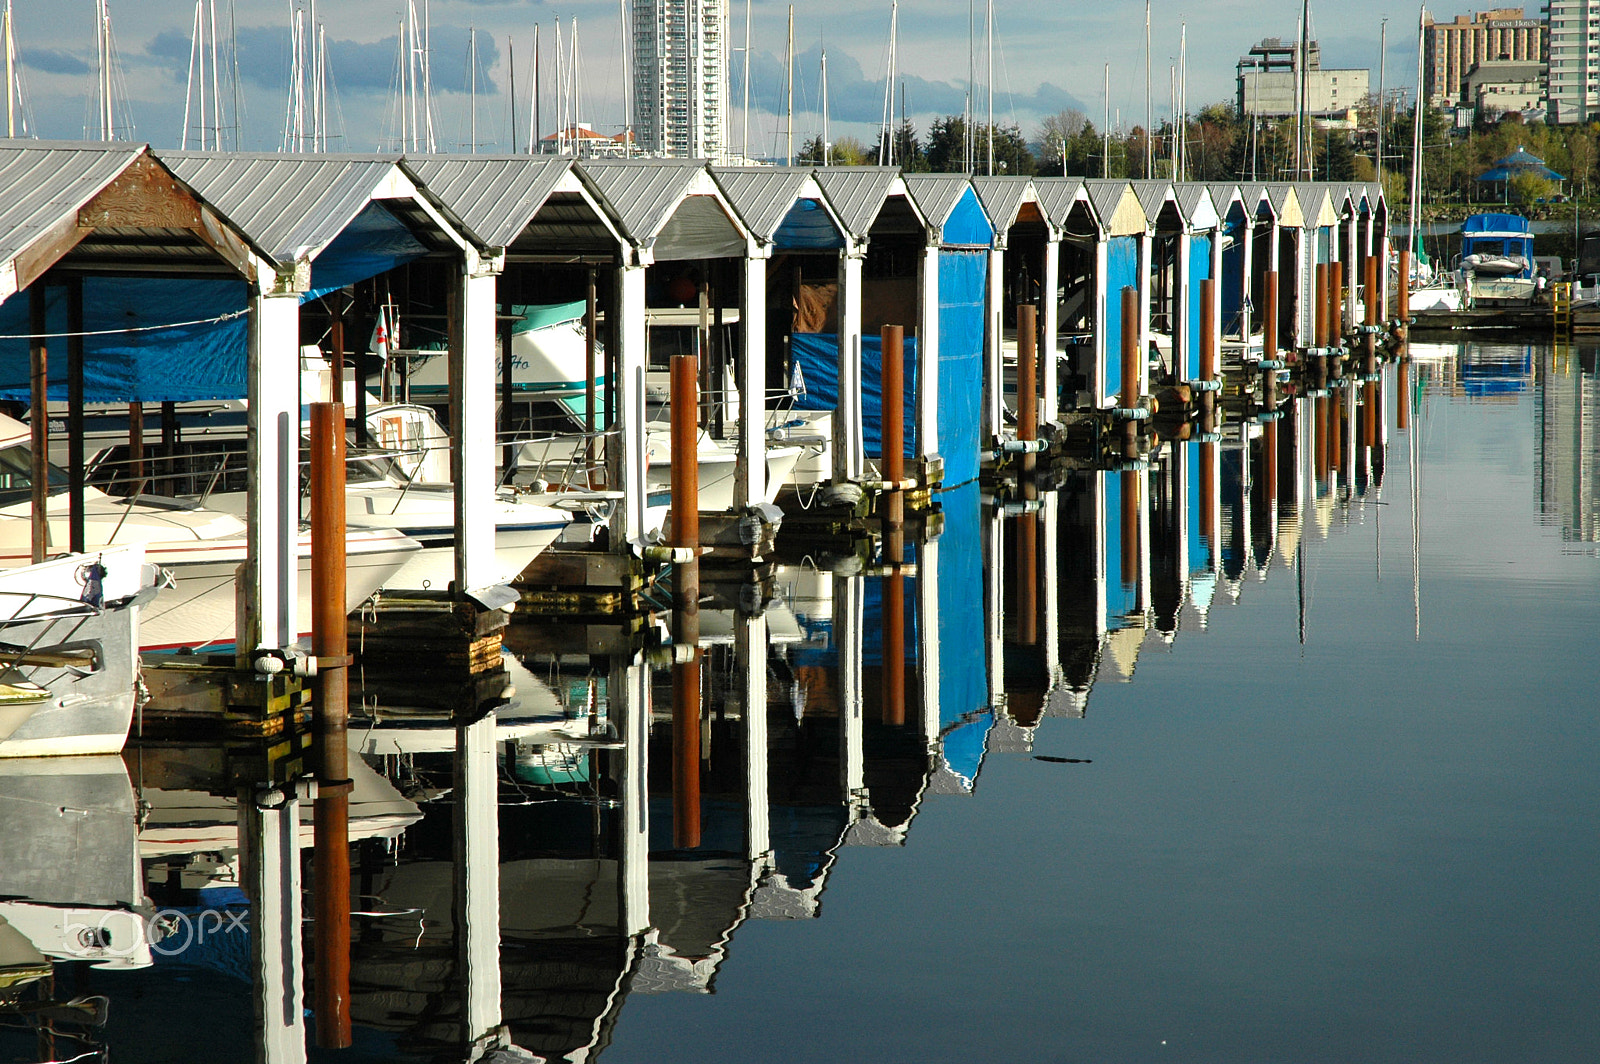 Nikon D70 sample photo. Boat mooring and reflection photography